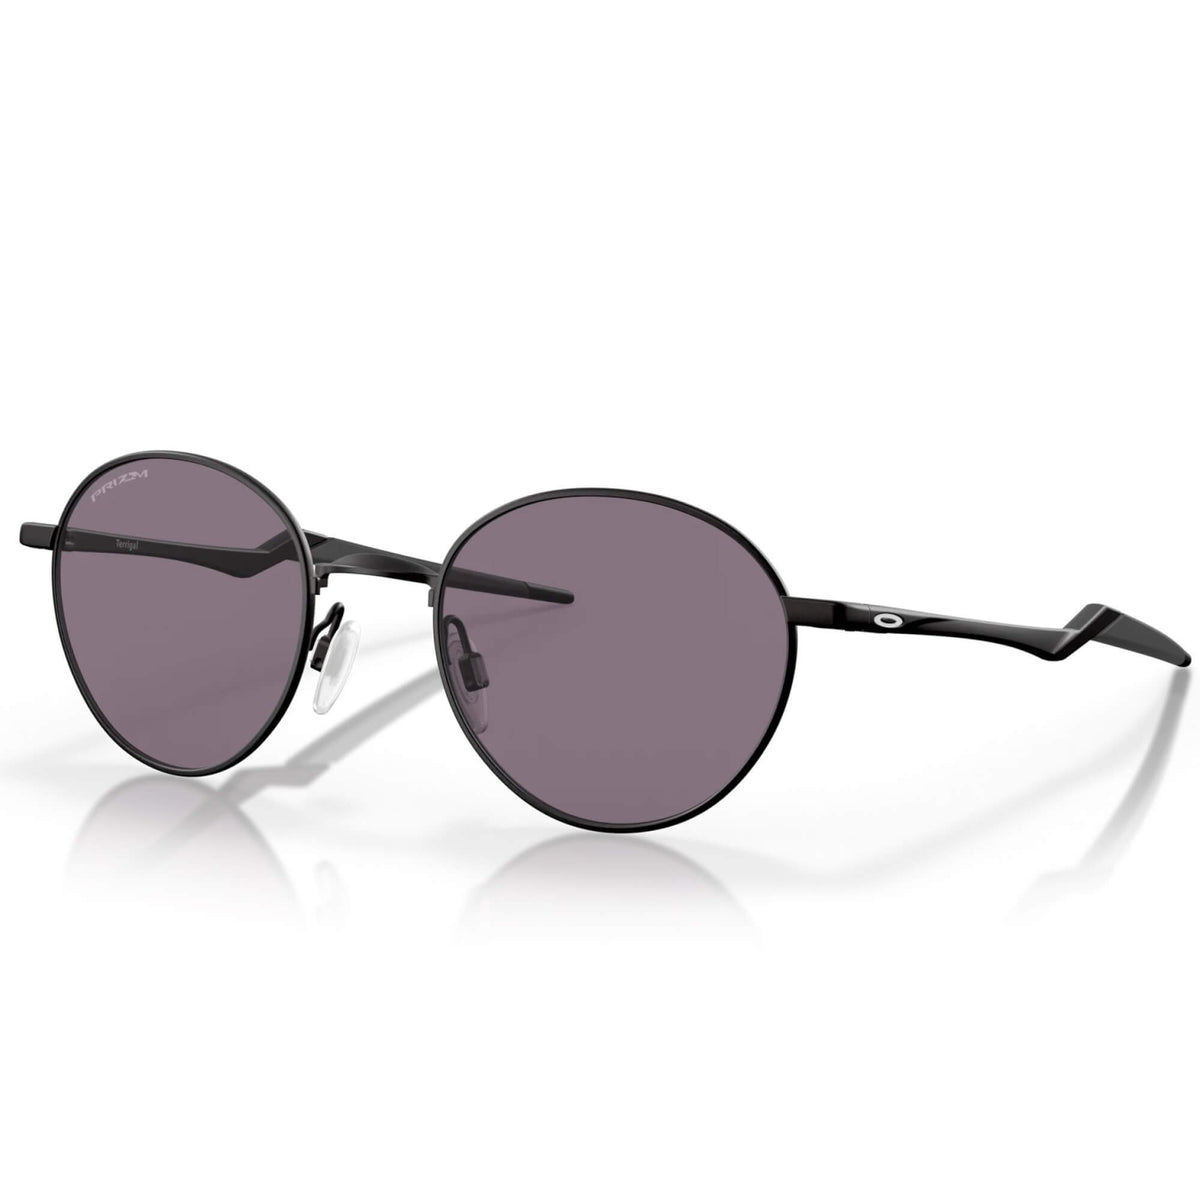 Buy URBAN LENS Latest Sunglasses For Men 100% UV Protection